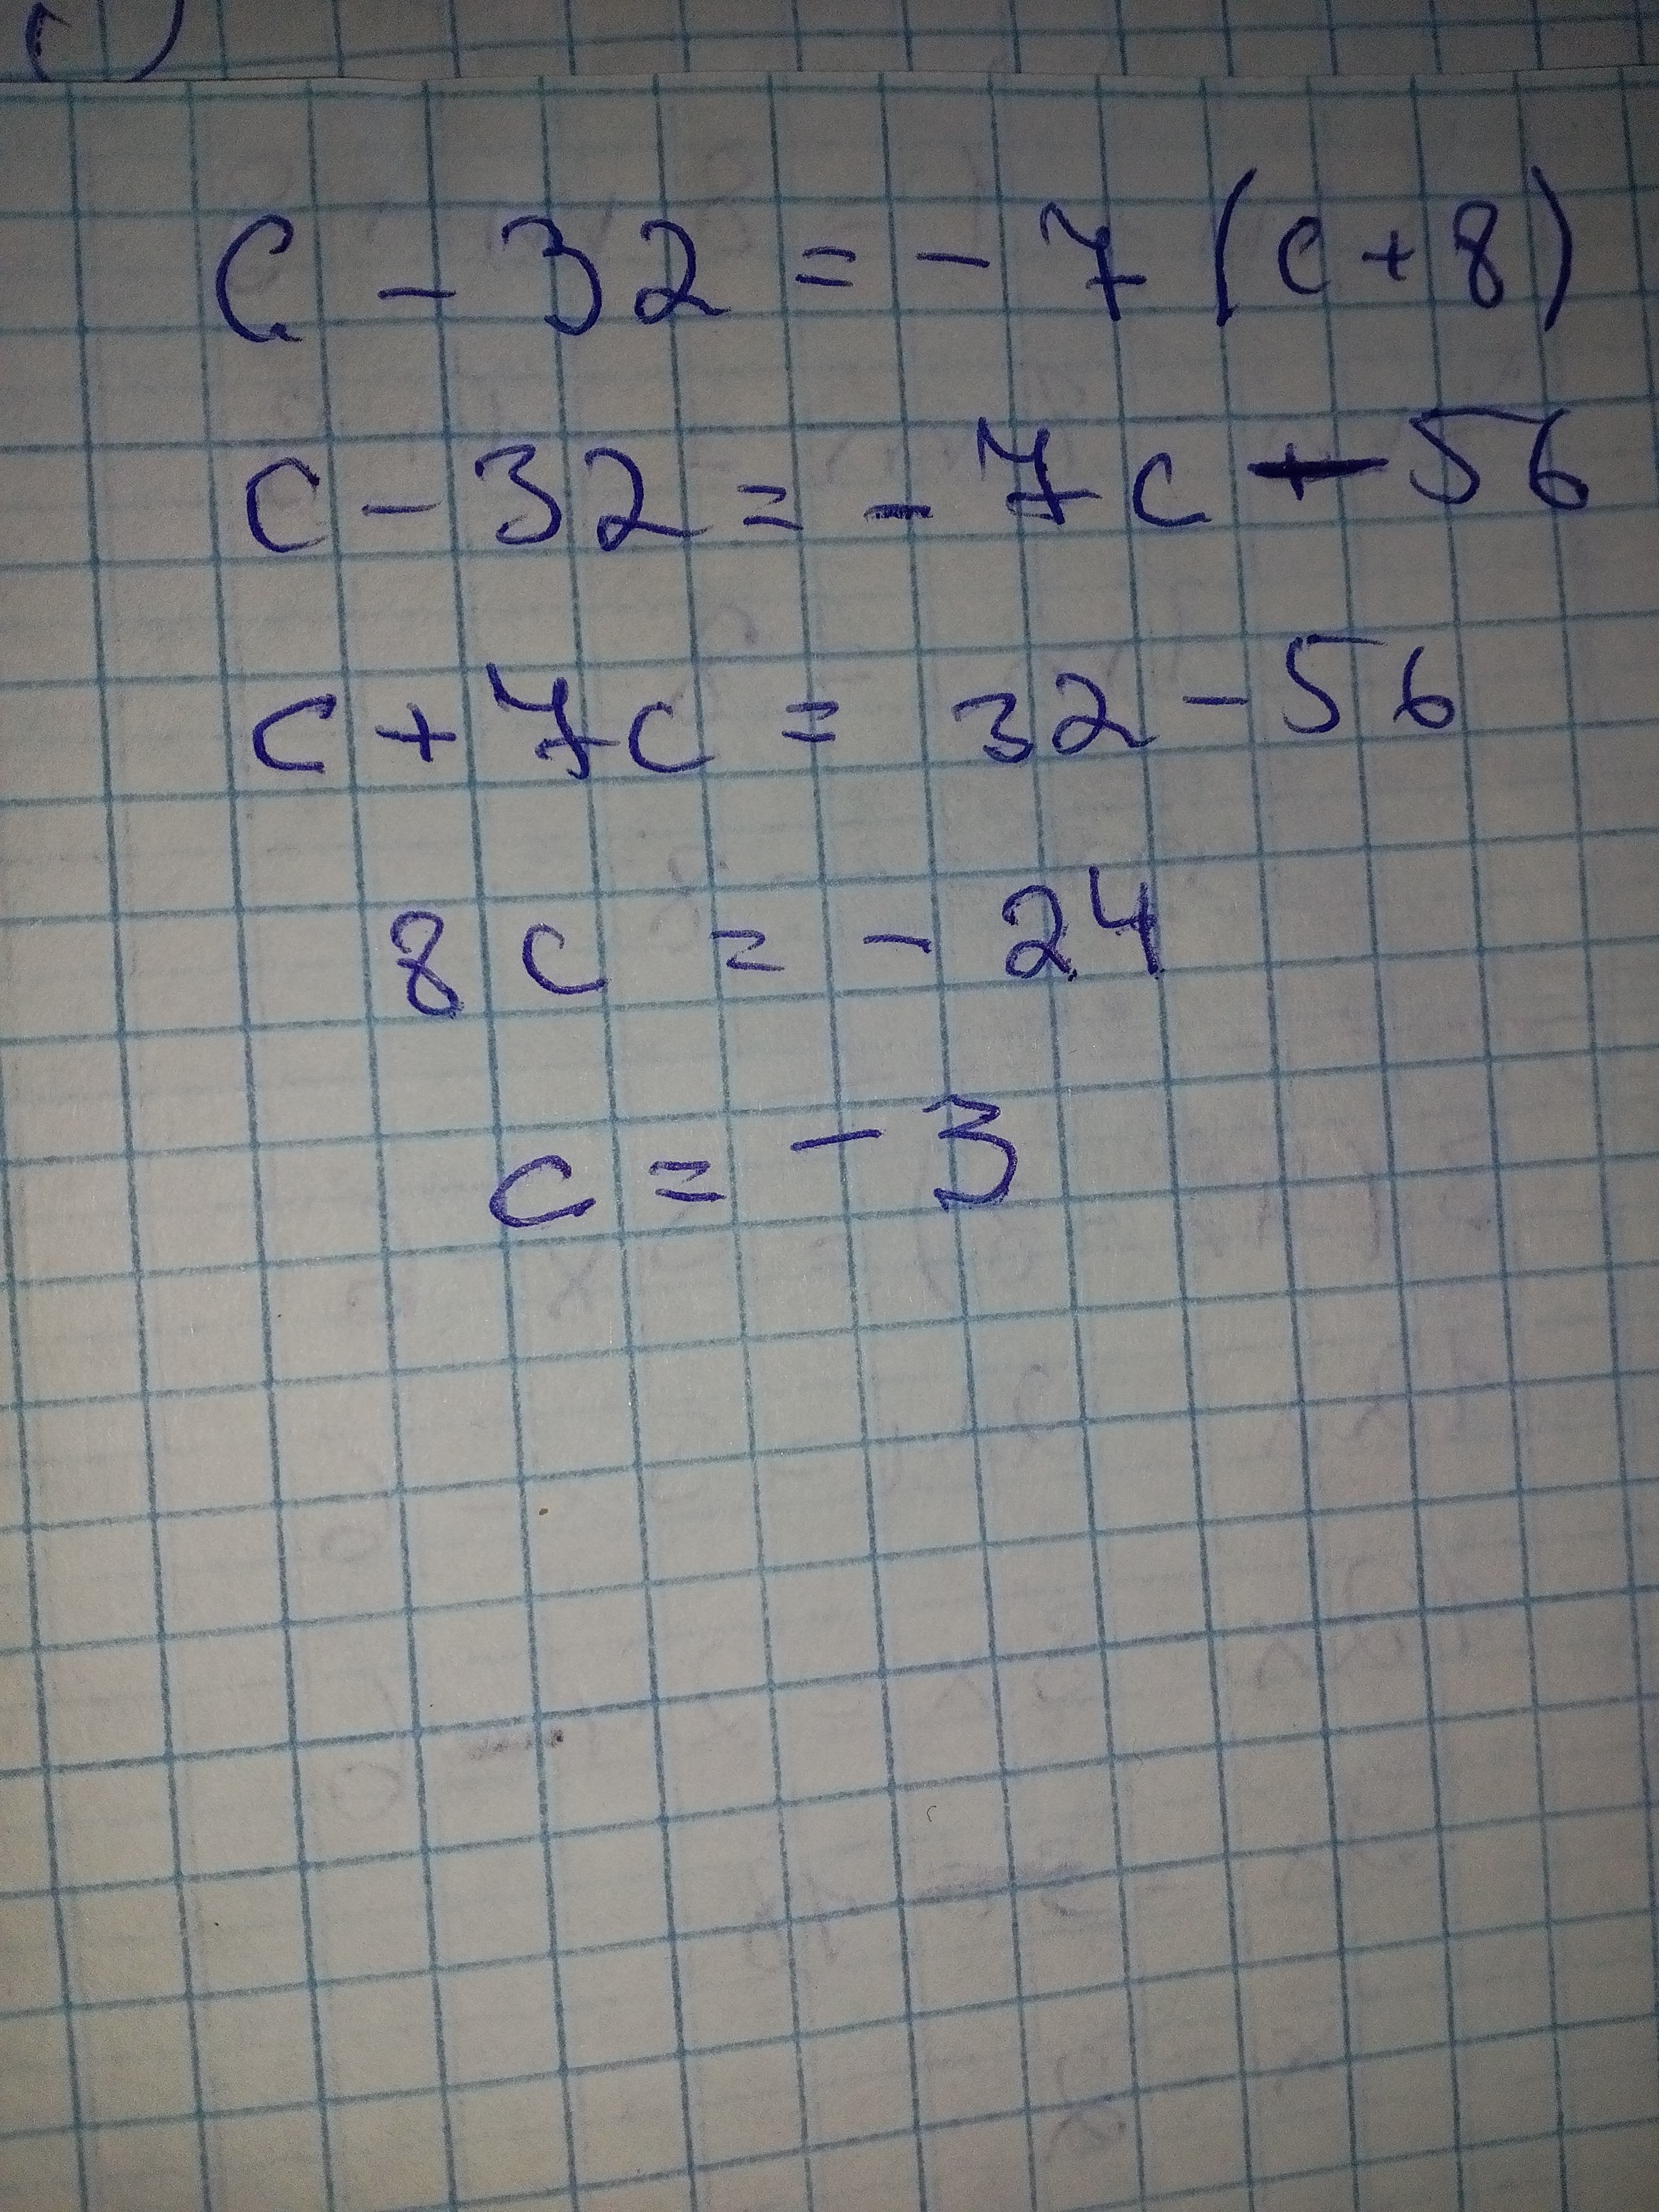 6 25 7 5 решение. 8x_3-x-4+6x_3+7x+8 решение. 6,8-(3,7-X)=8,8 уравнение. Решение. 7а+8а решение. Решить уравнение (2 c 2+c+6) (c+5).